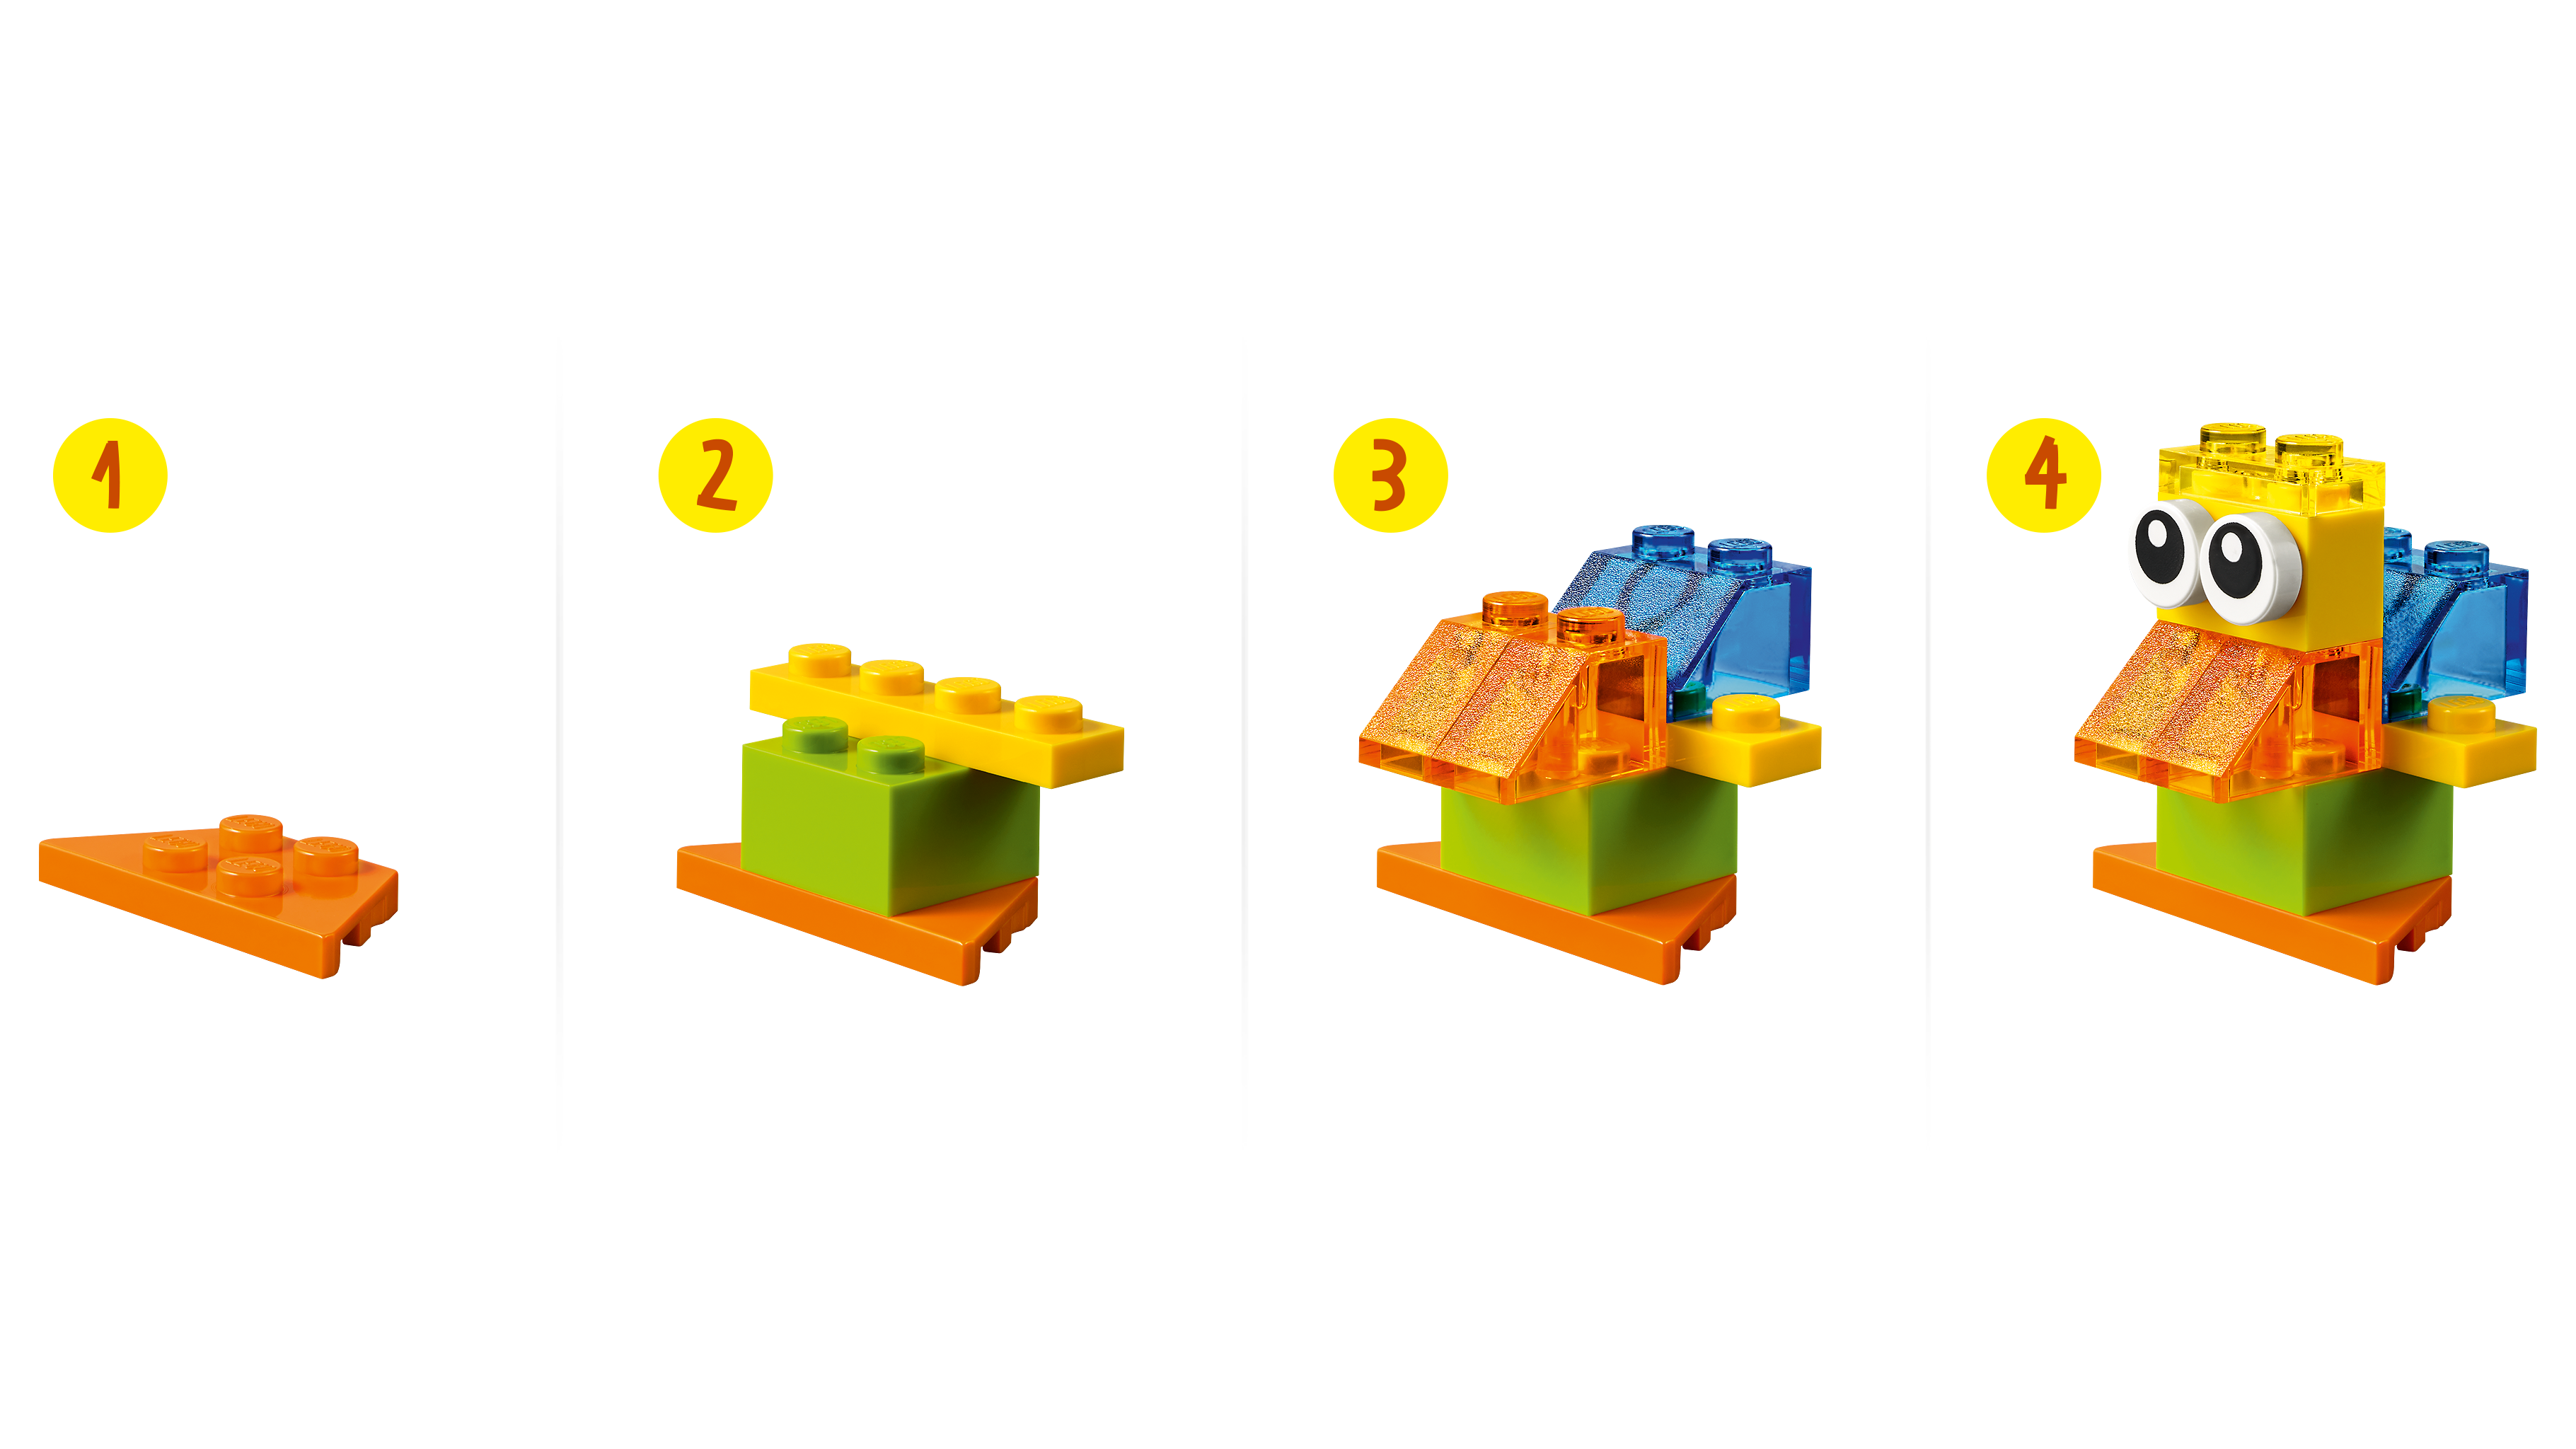 LEGO Classic Briques transparentes créatives 11013 Ensemble de